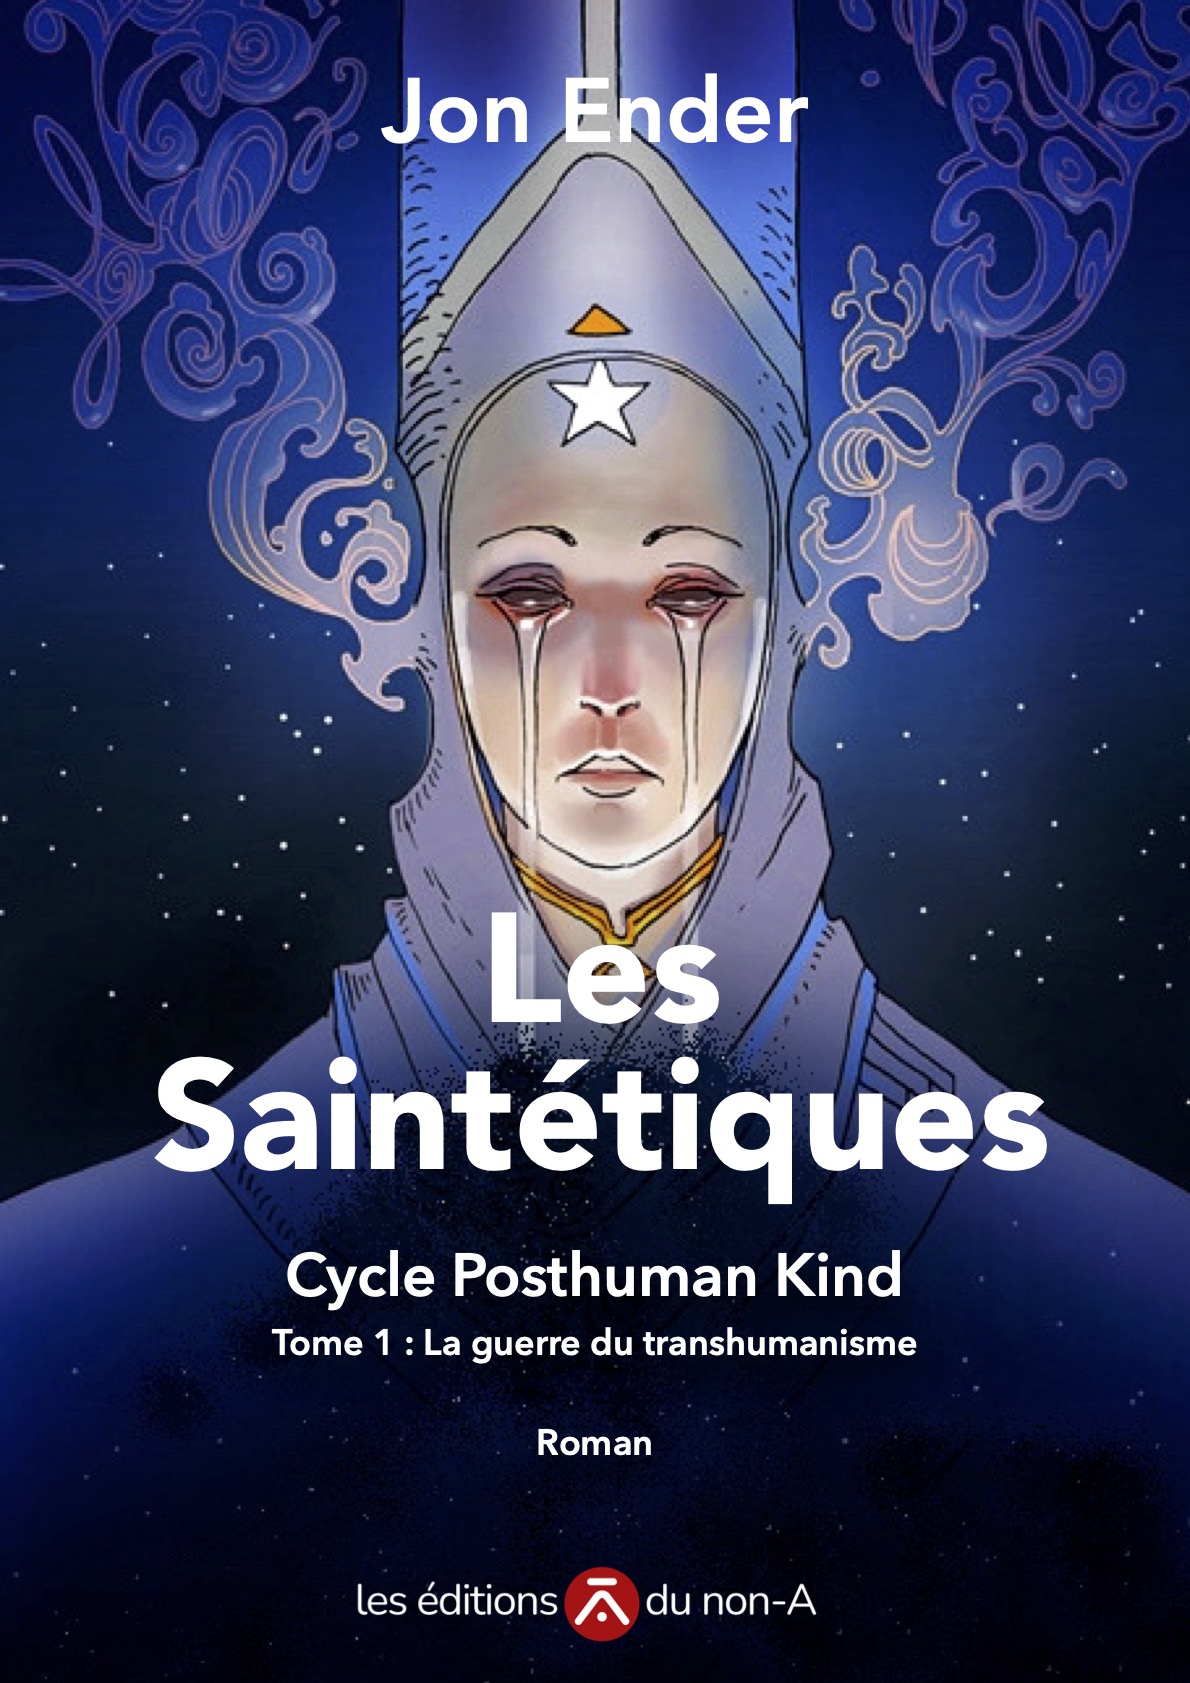 Maquette de couverture du roman "les Saintétiques"